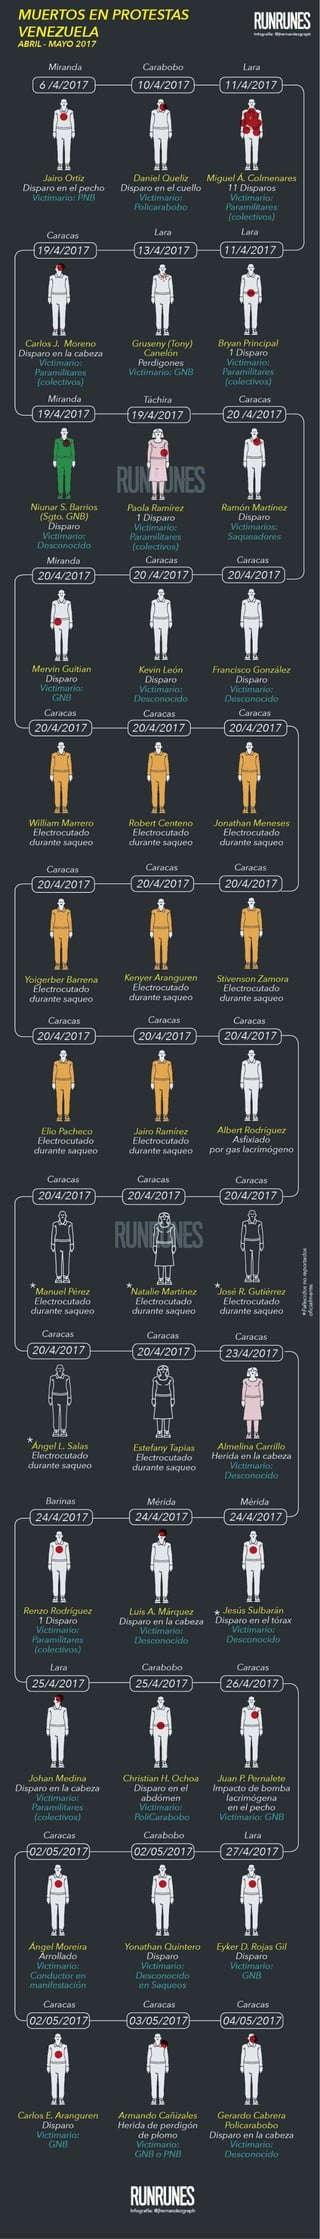 Infografía - Fallecidos en protestas Venezuela 2017 (Del 1 de abril hasta el 4 de mayo, cortesía de Runrunes)